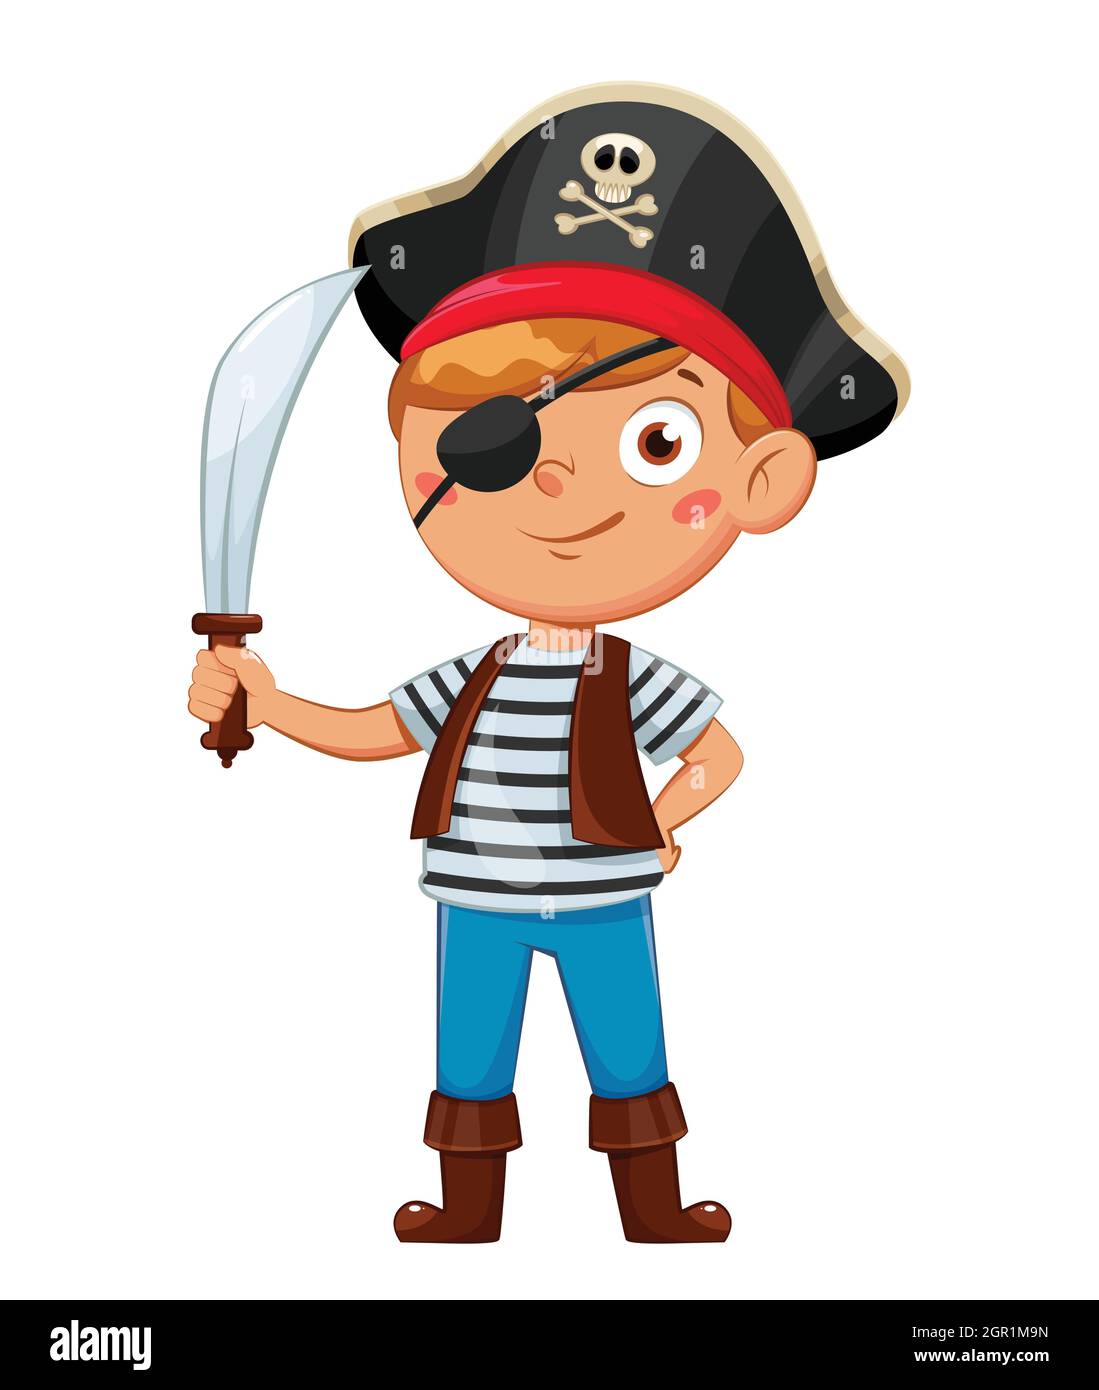 Fröhlicher Junge im Piratenkostüm. Kind in Weihnachten Karneval Kostüm, niedliche Cartoon-Figur. Vektorgrafik auf weißem Hintergrund Stock Vektor